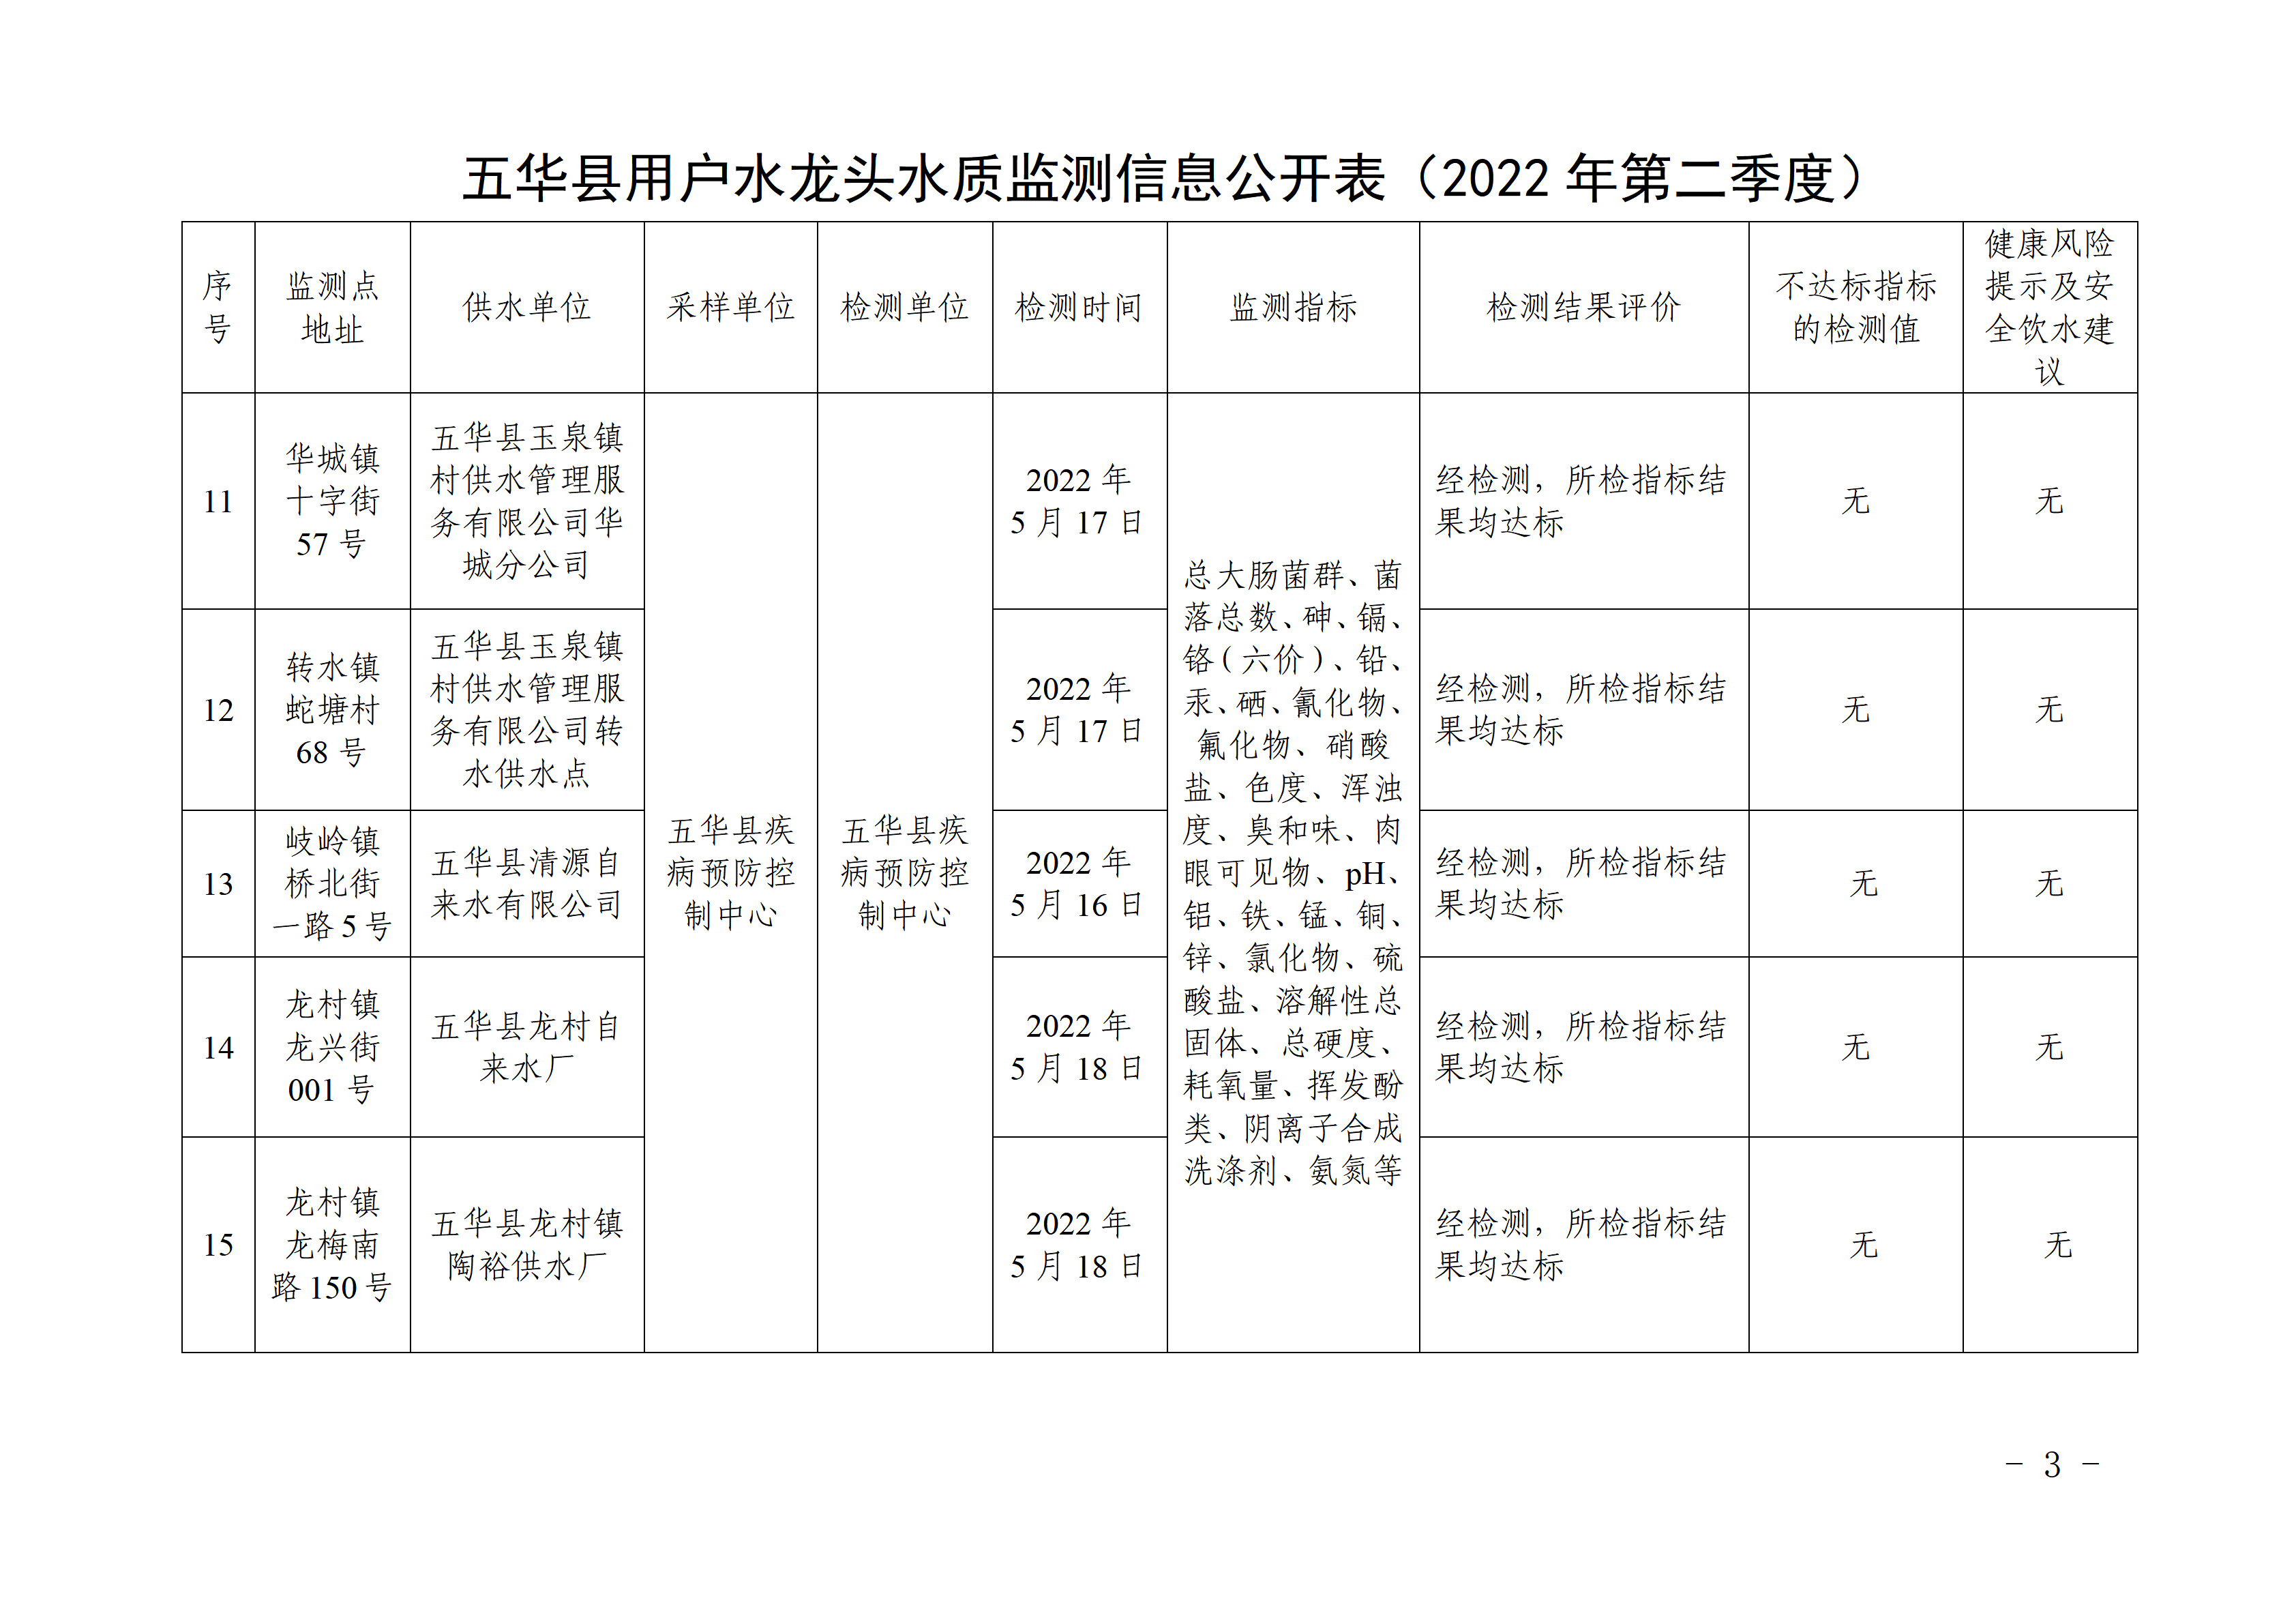 关于五华县2022年第二季度用户水龙头水质监测结果的报告 - 副本_03.png